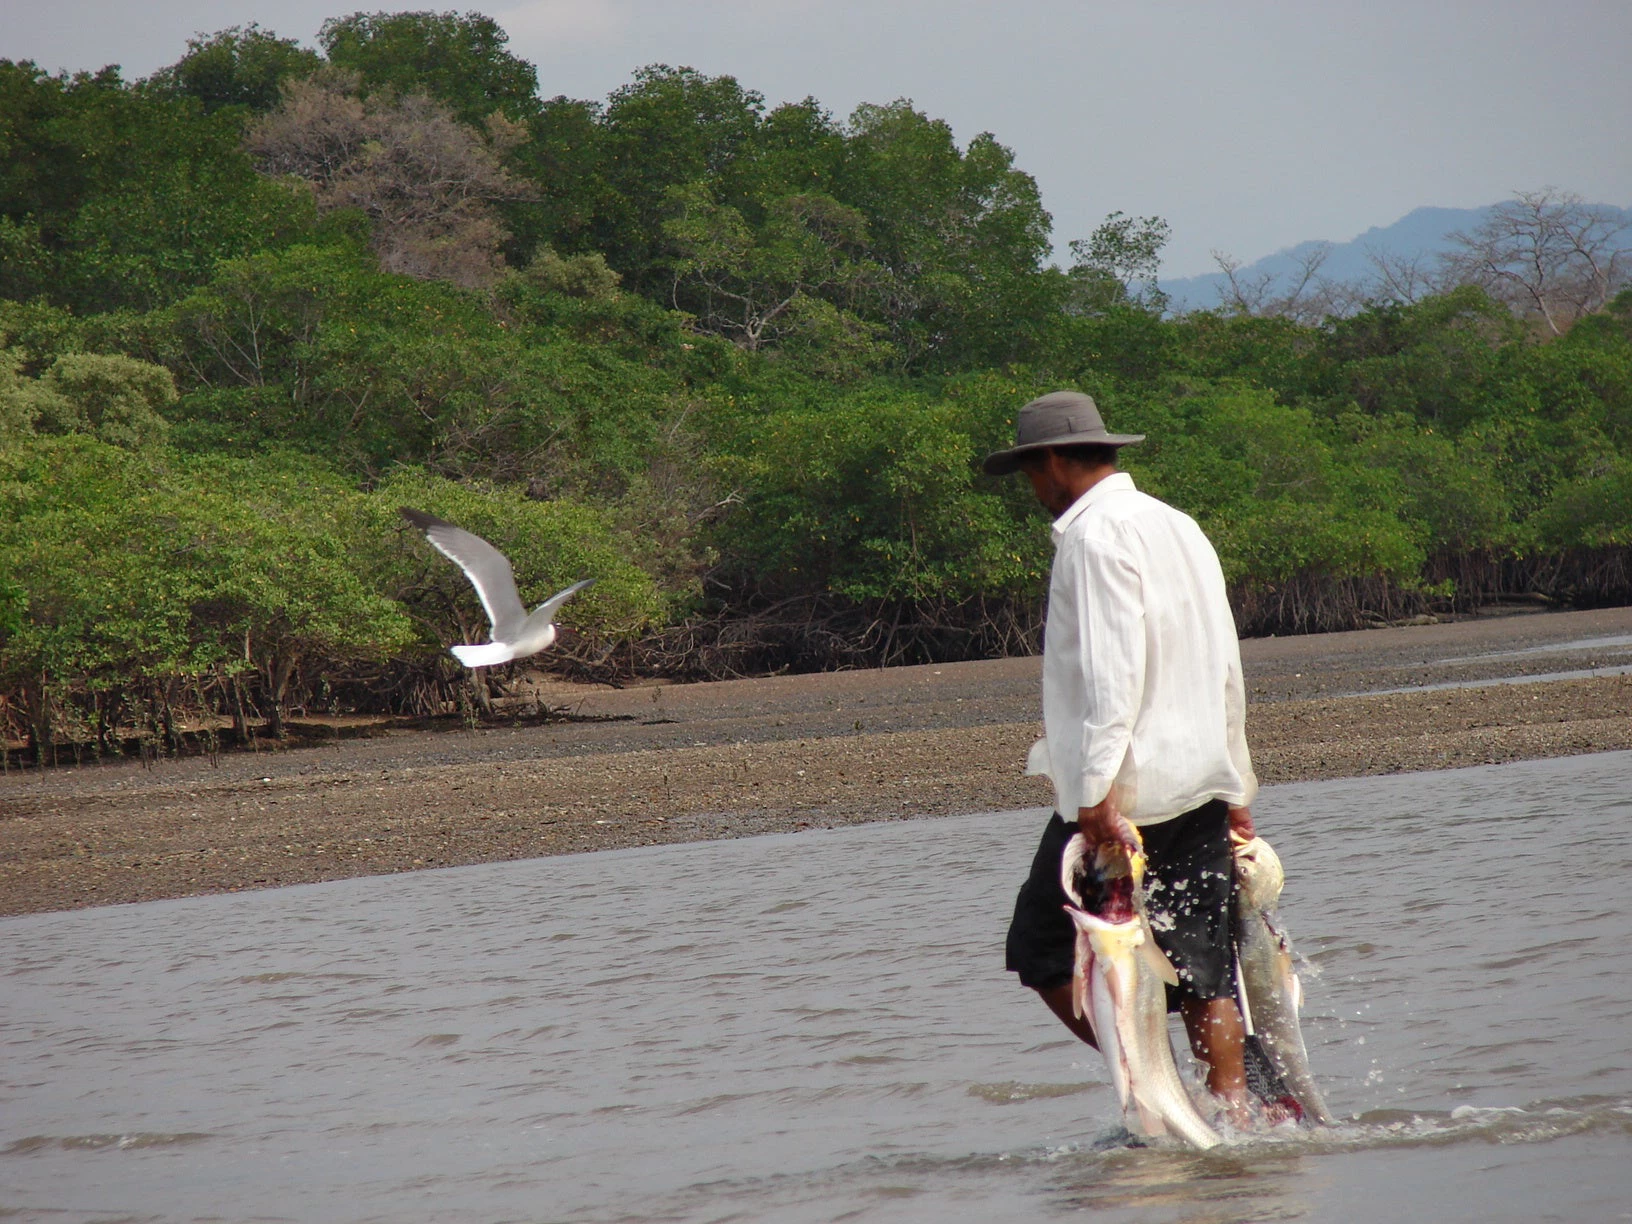 Pescador en Isla Chira, Costa Rica. Cynthia Flores Mora/ Banco Mundial